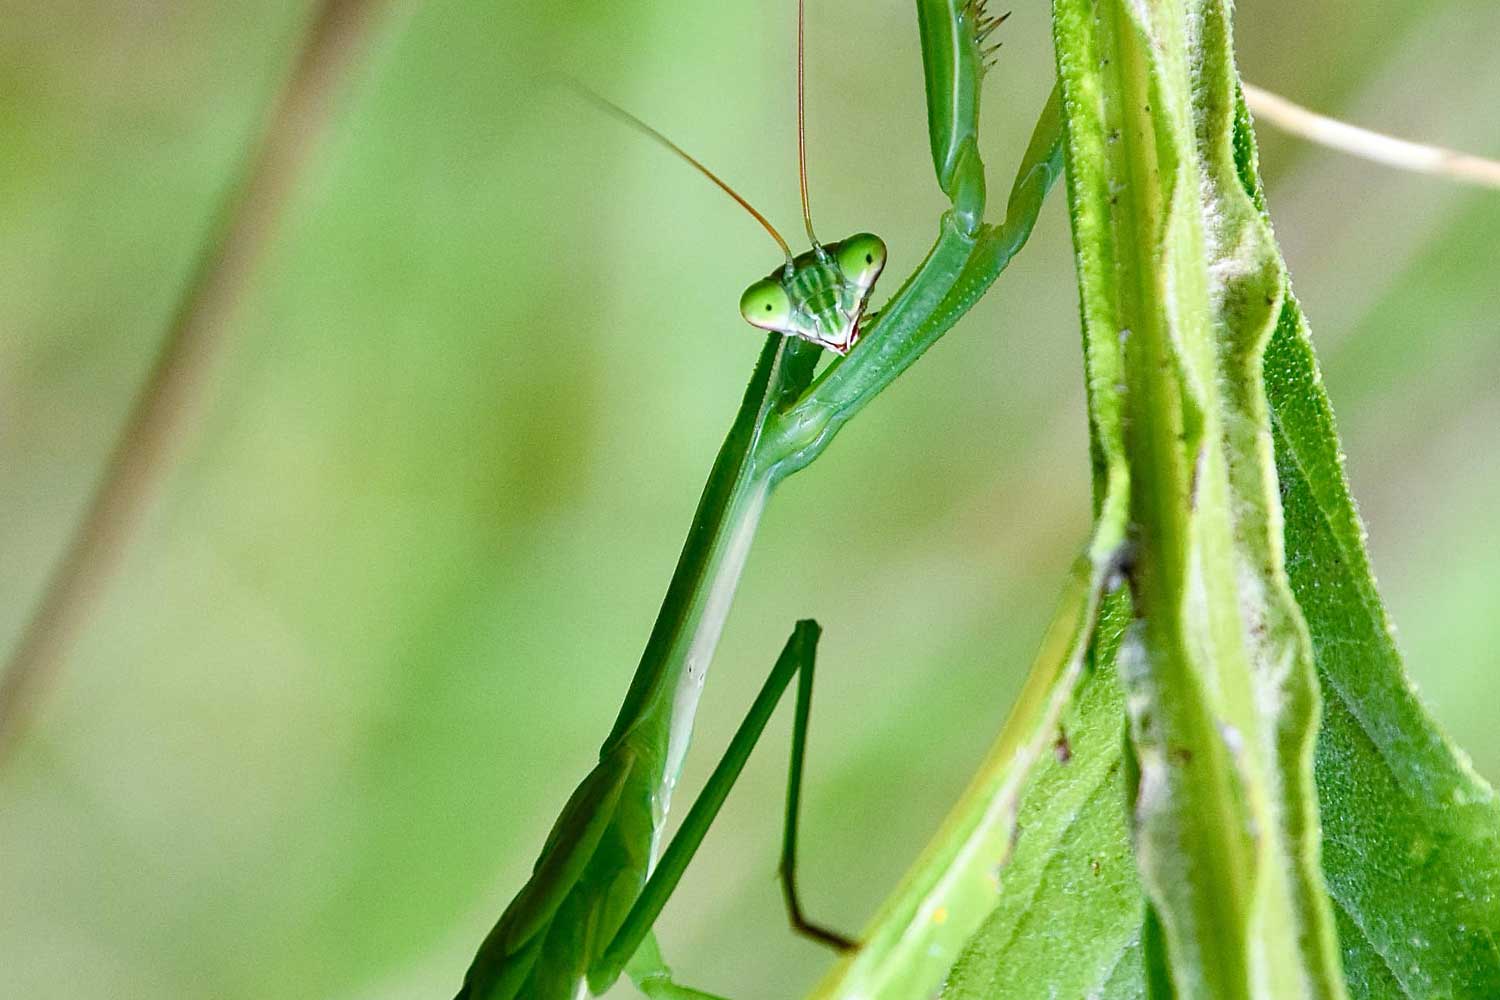 Praying mantis on a piece of vegetation.